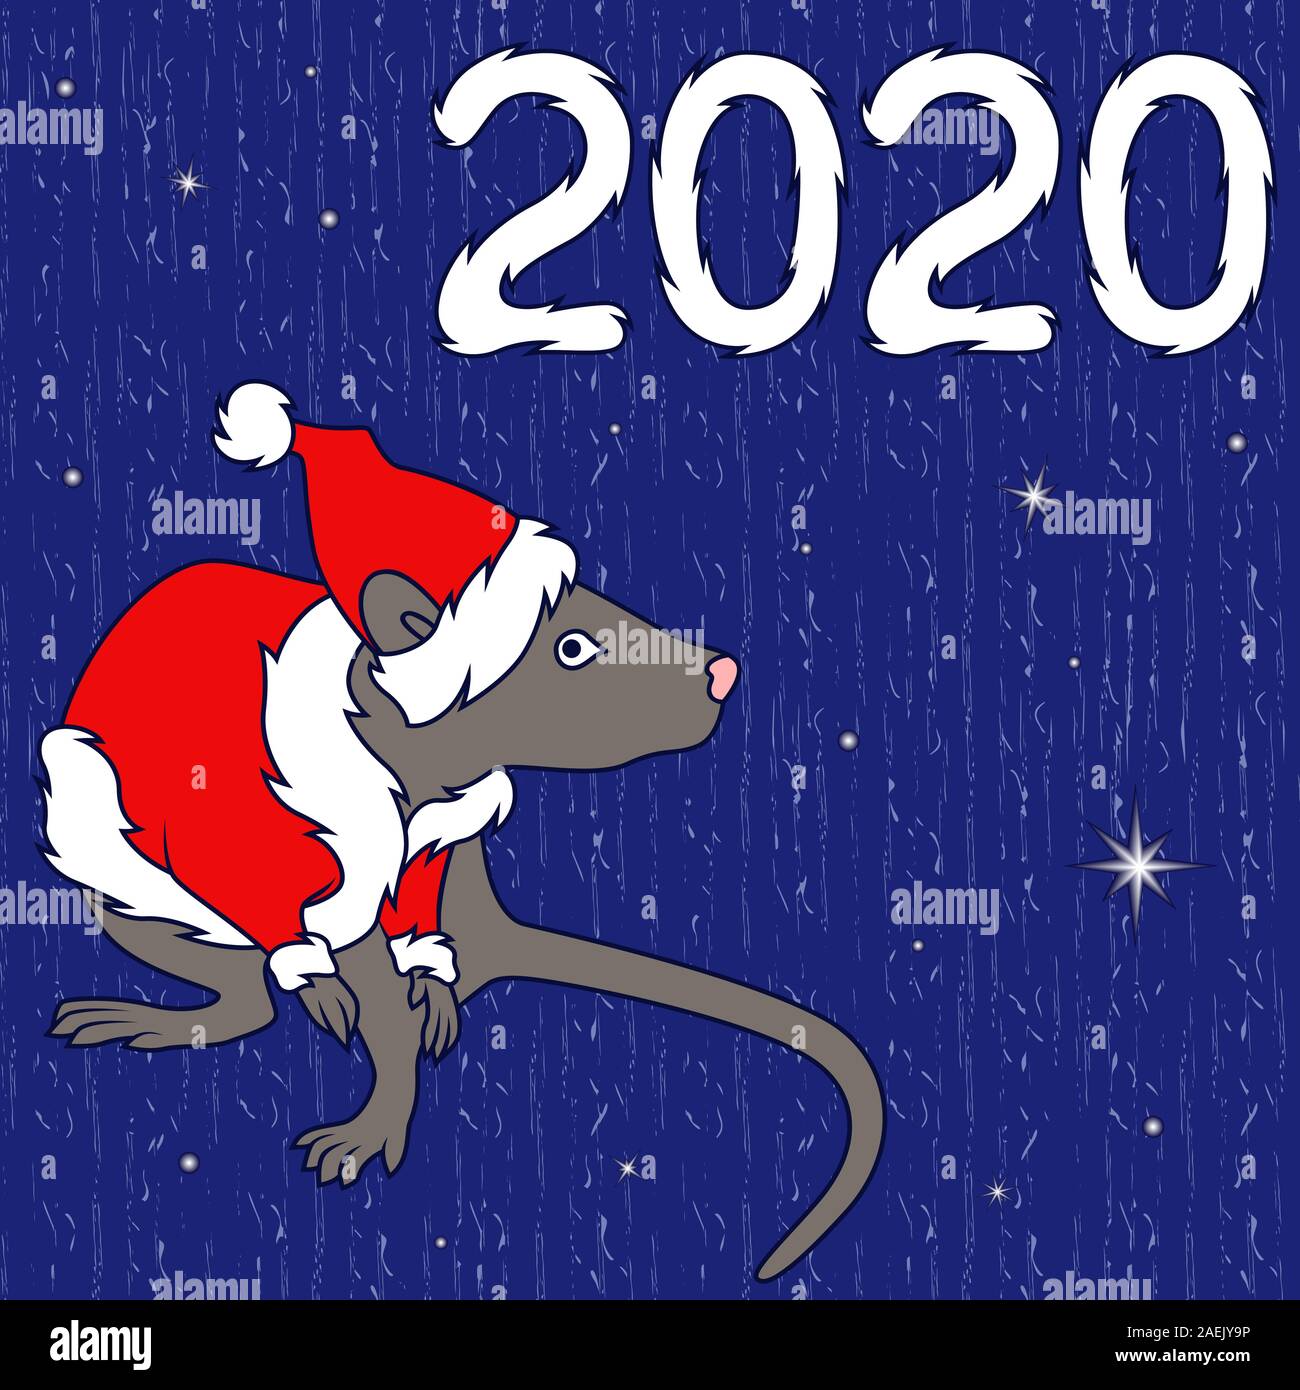 Chinesisches Zeichen Ratte, in Santa Jacke und Hut, Symbol für das Neue Jahr auf dem Östlichen Kalender, handgezeichnete Abbildung auf dem gedeckten Blau Muster mit Stern, Ba Stock Vektor